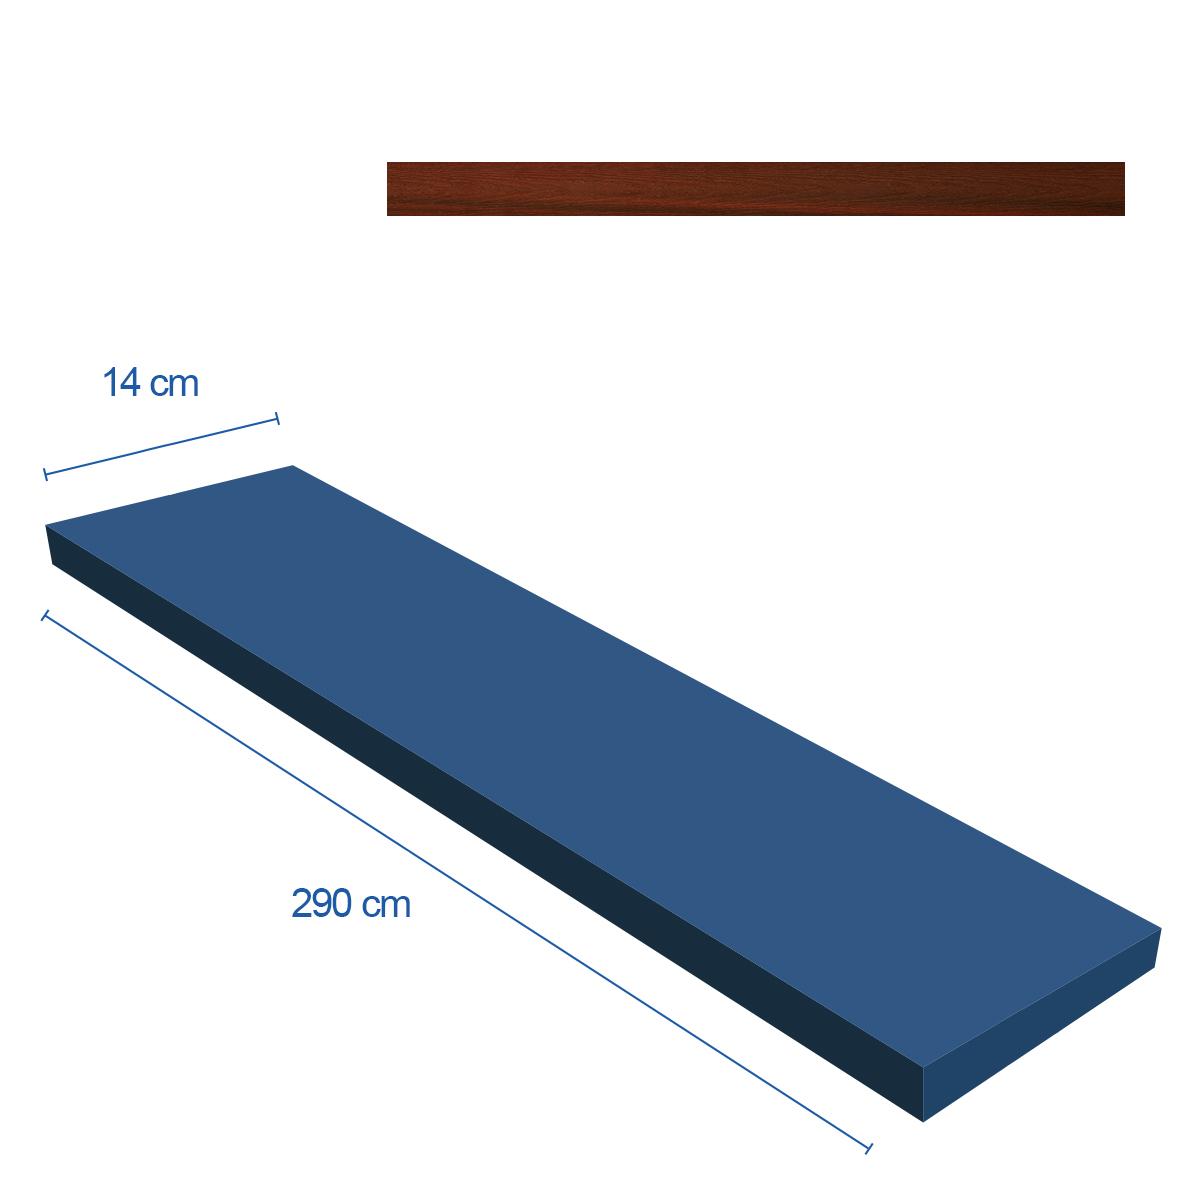 Piso Deck Rose Wood Mate - 14X290 - 0.42 m2